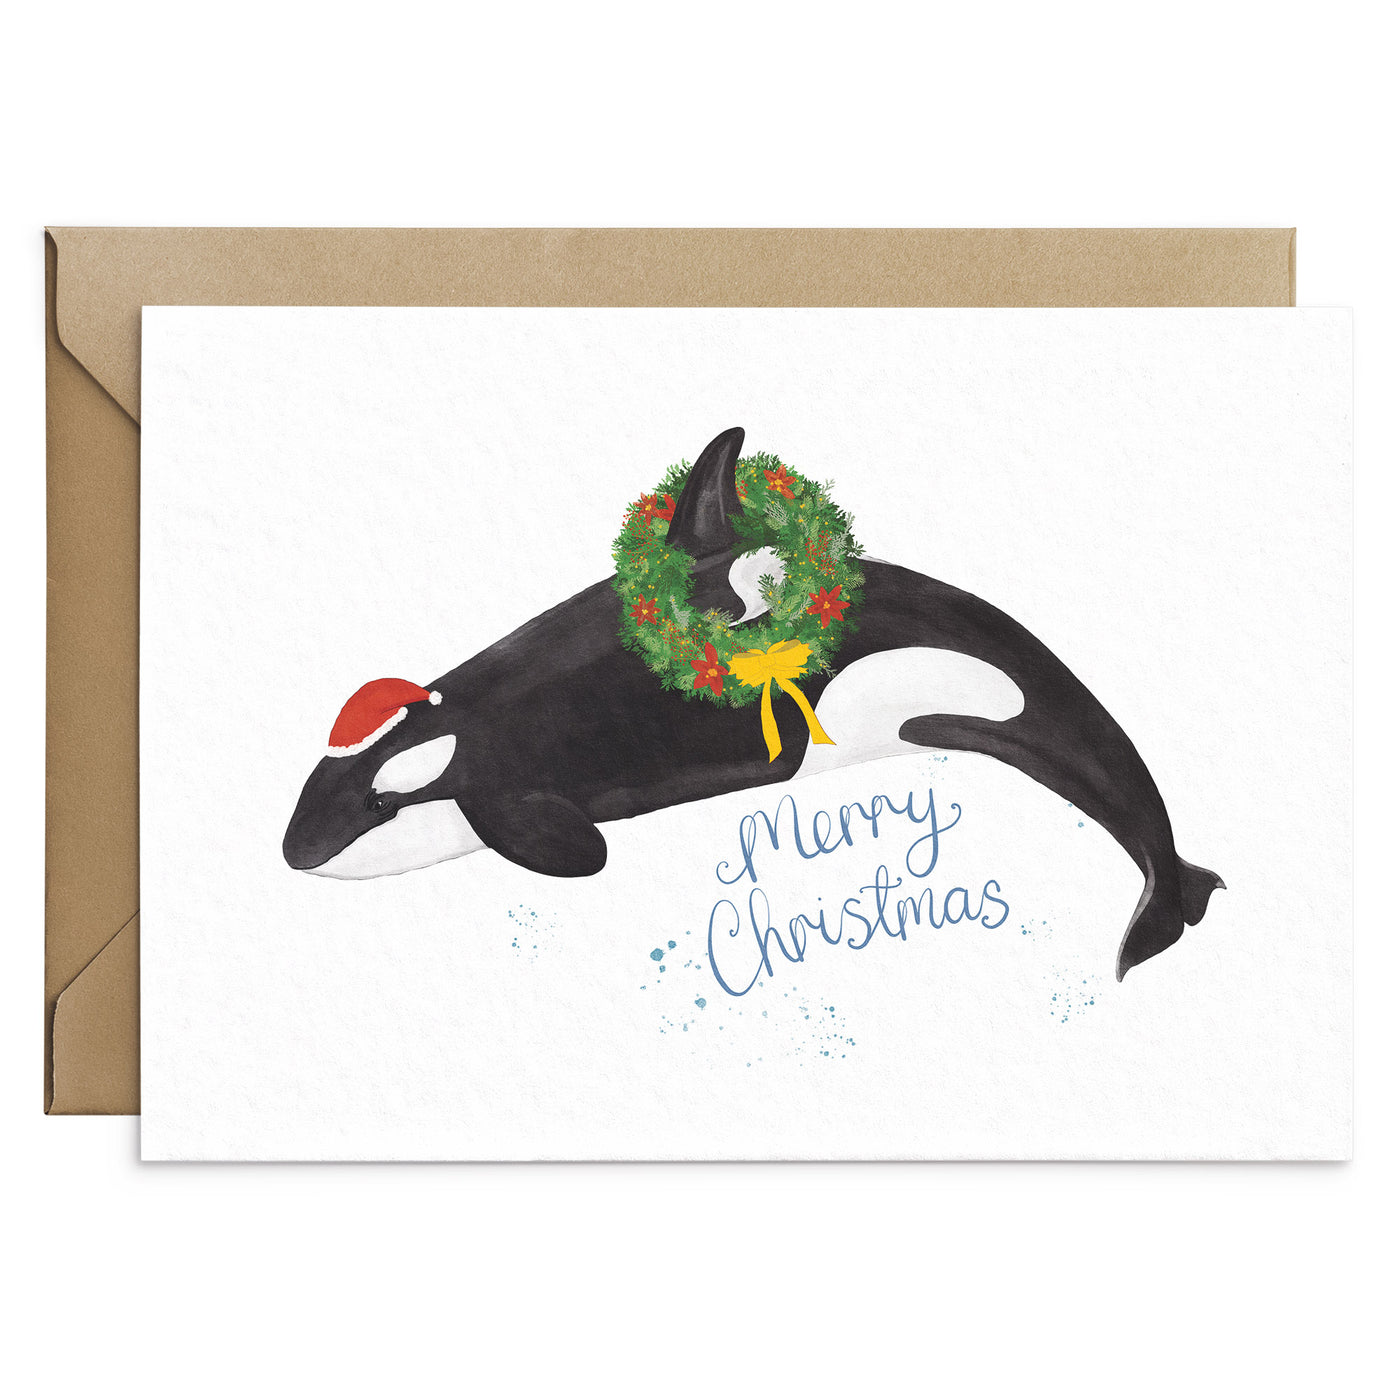 Orca Christmas Card - Poppins & Co.